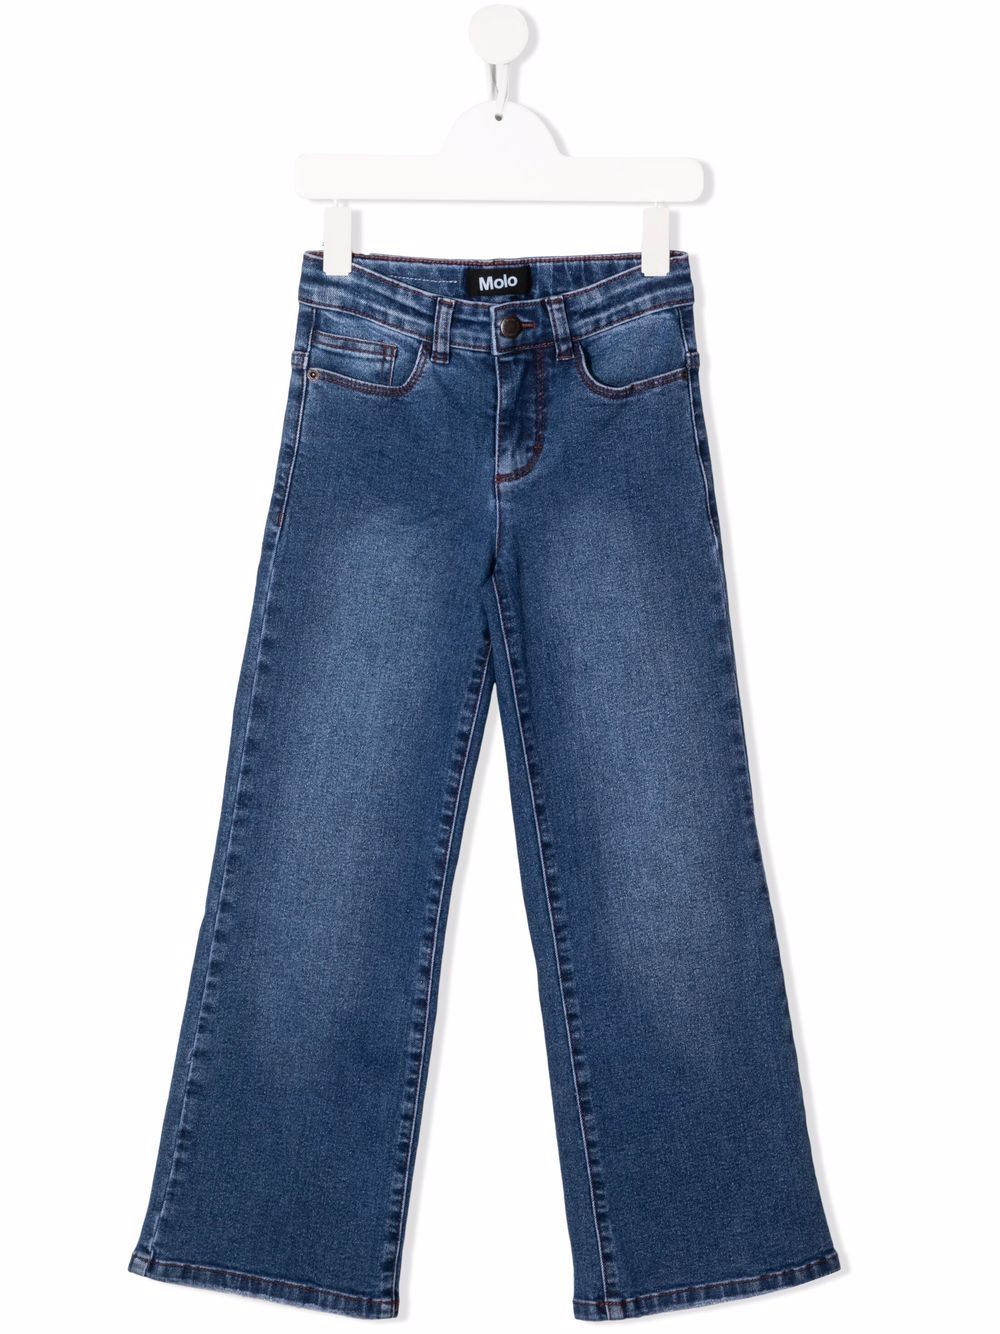 фото Molo прямые джинсы средней посадки